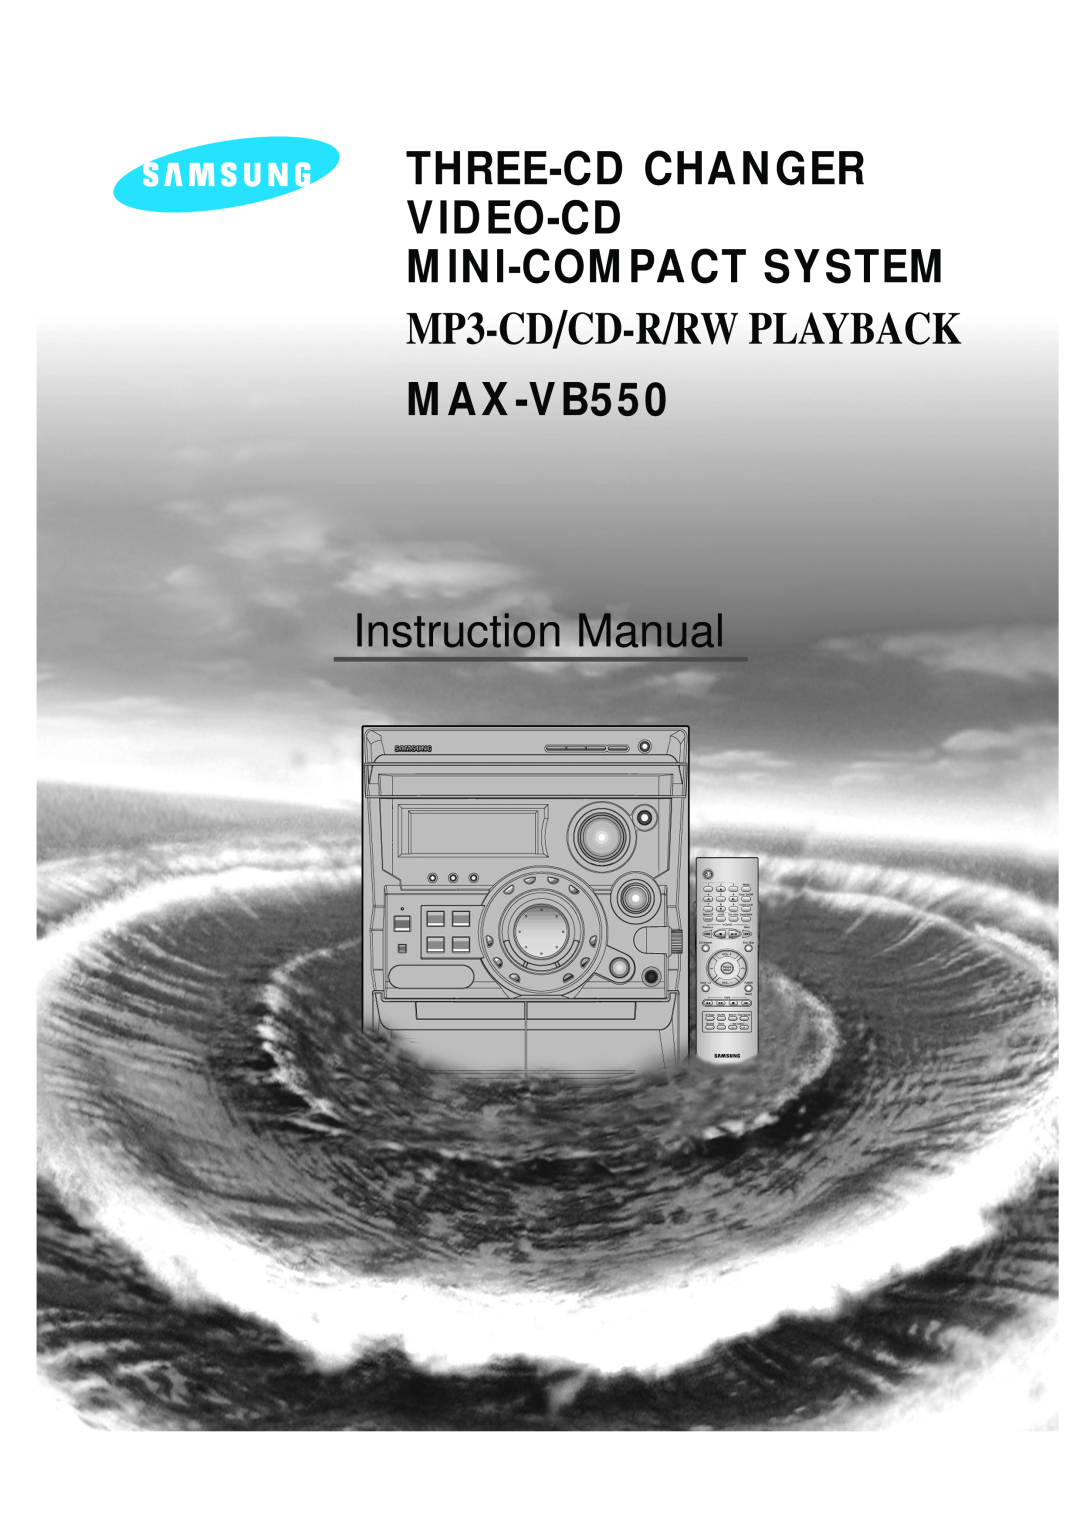 Samsung AH68-01145B instruction manual Three-Cd Changer Video-Cd Mini-Compact System, MP3-CD/CD-R/RW PLAYBACK, MAX-VB550 